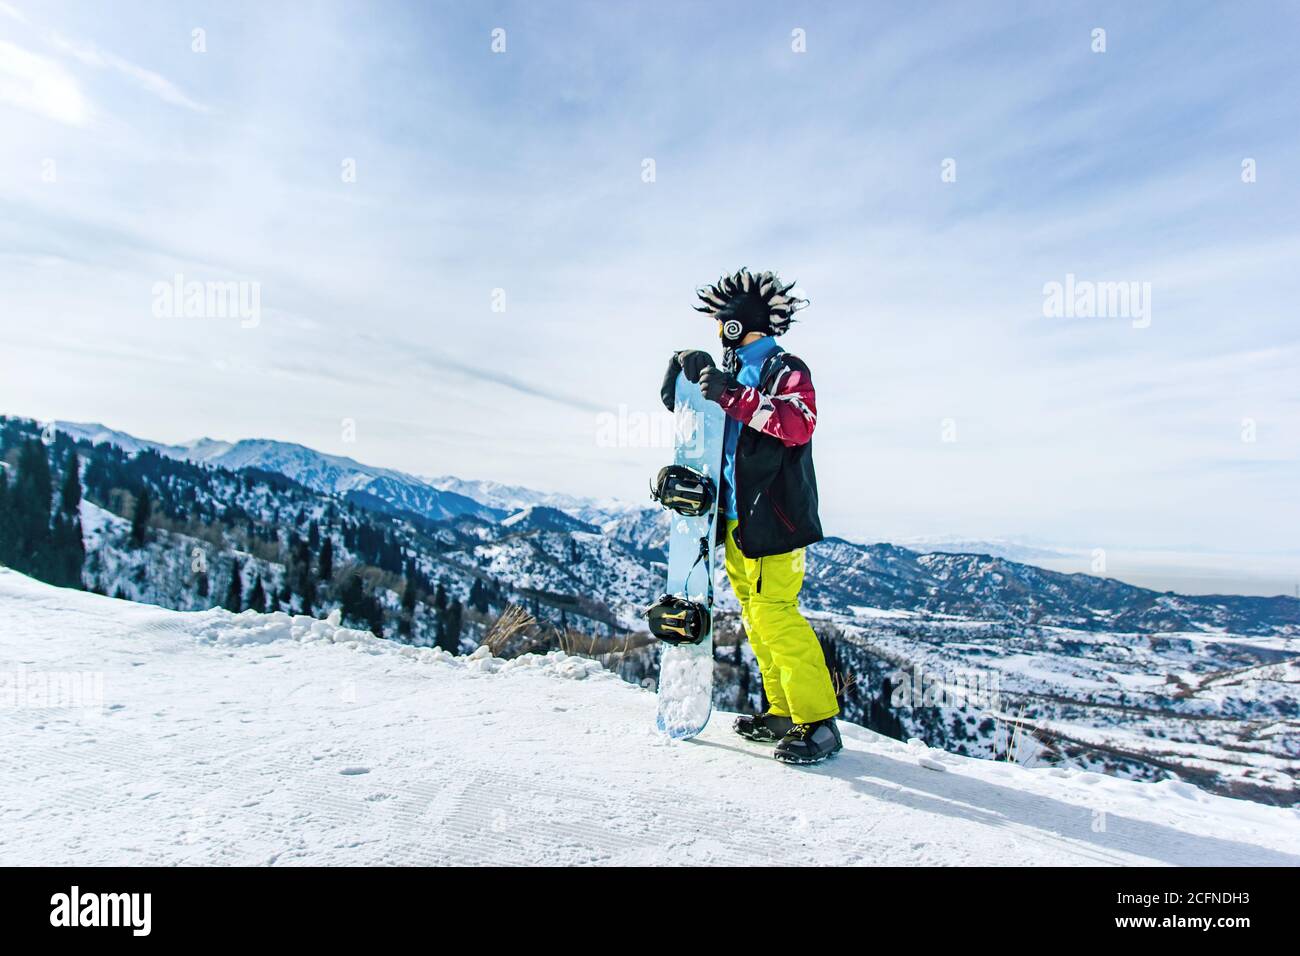 Bonhomme de neige à barbe dans un masque de ski avec des lunettes et un gros chapeau mohawk en fourrure sur fond de ciel et de montagnes enneigées d'hiver Banque D'Images